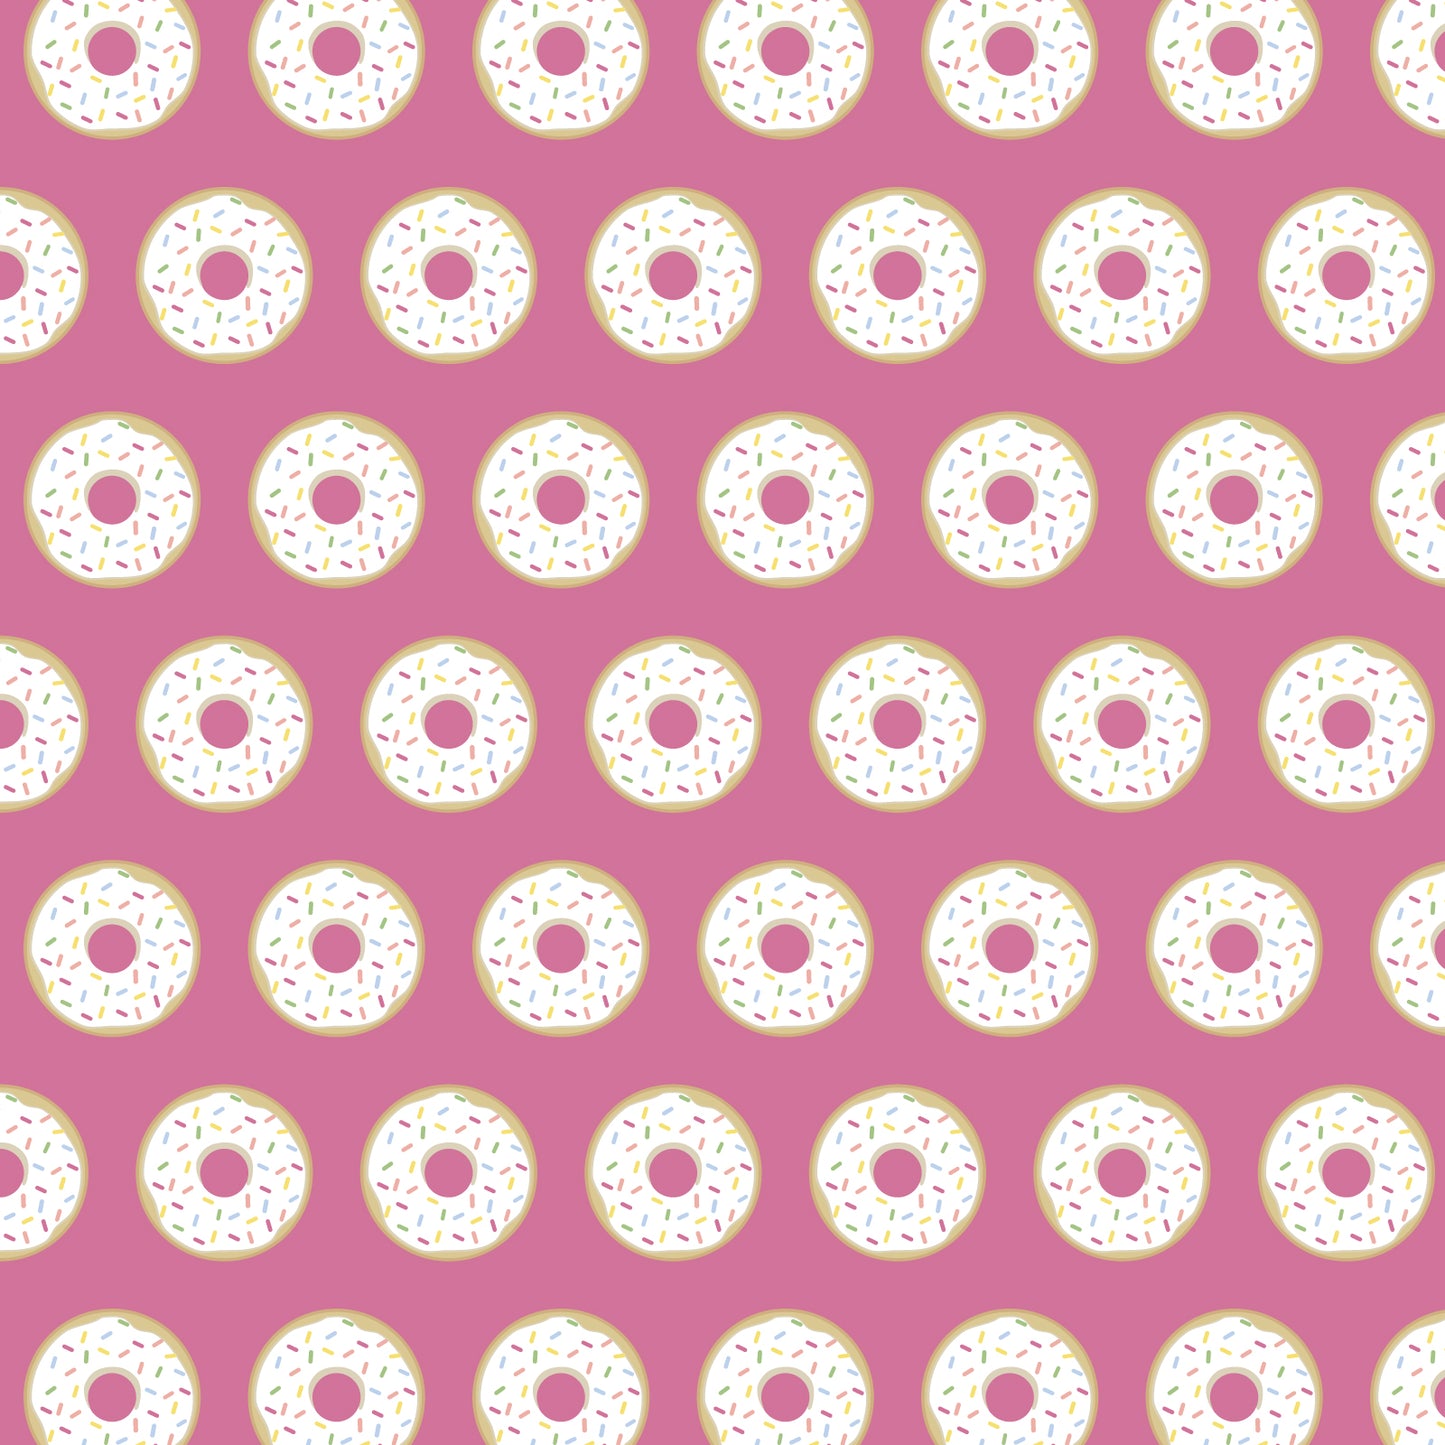 Alden Pajama - Donuts